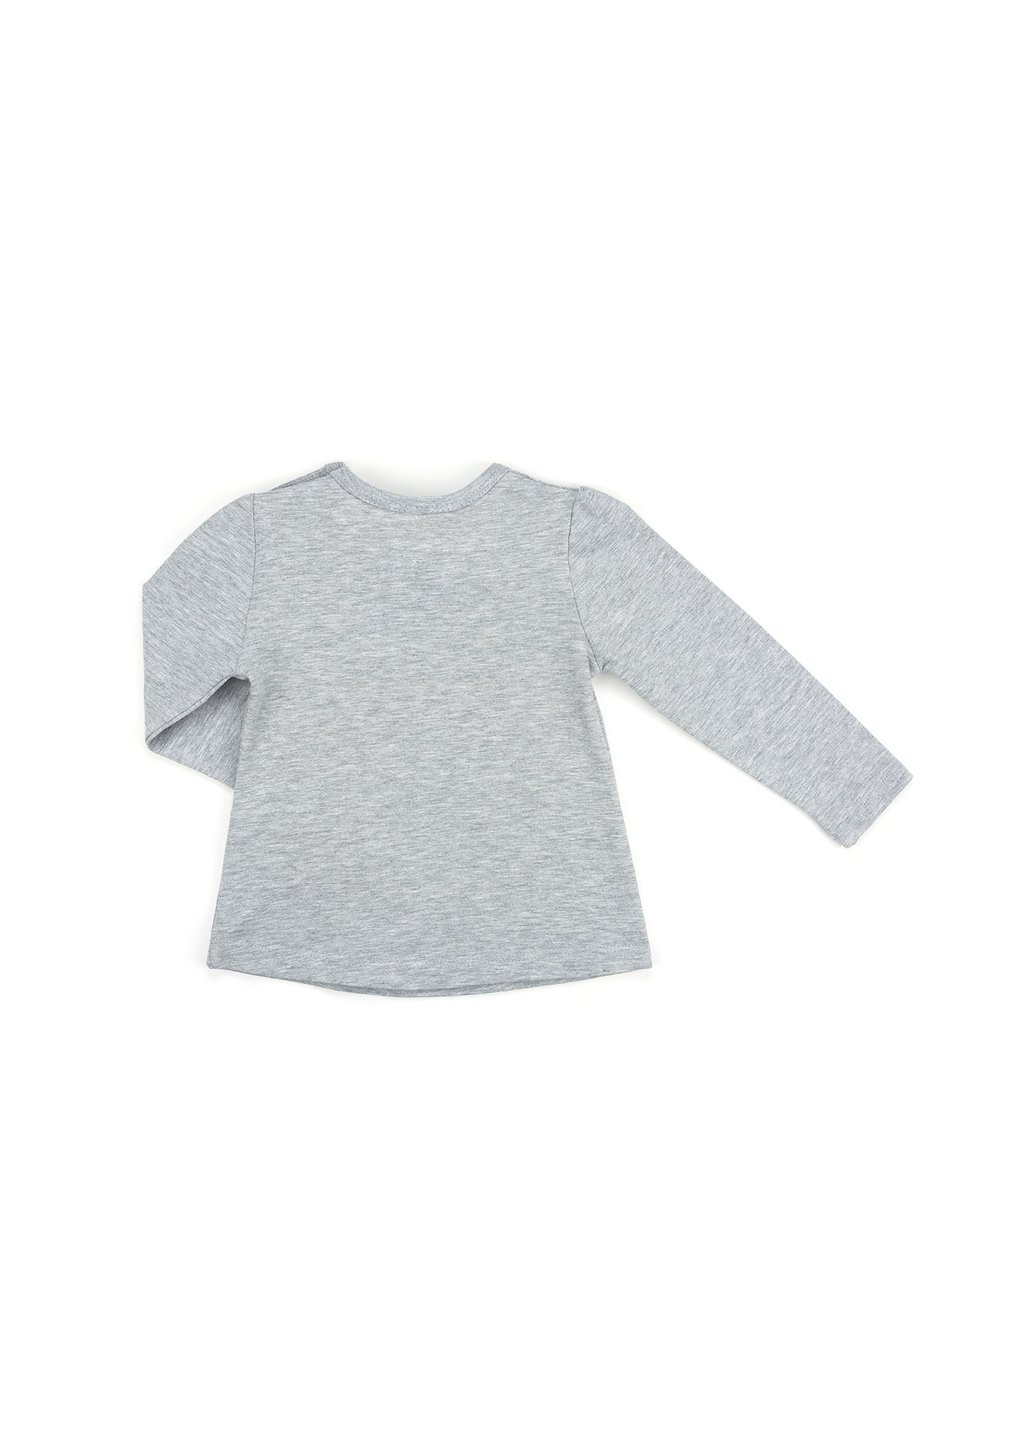 Серый демисезонный набор детской одежды с бантиками (10527-74g-gray) Breeze